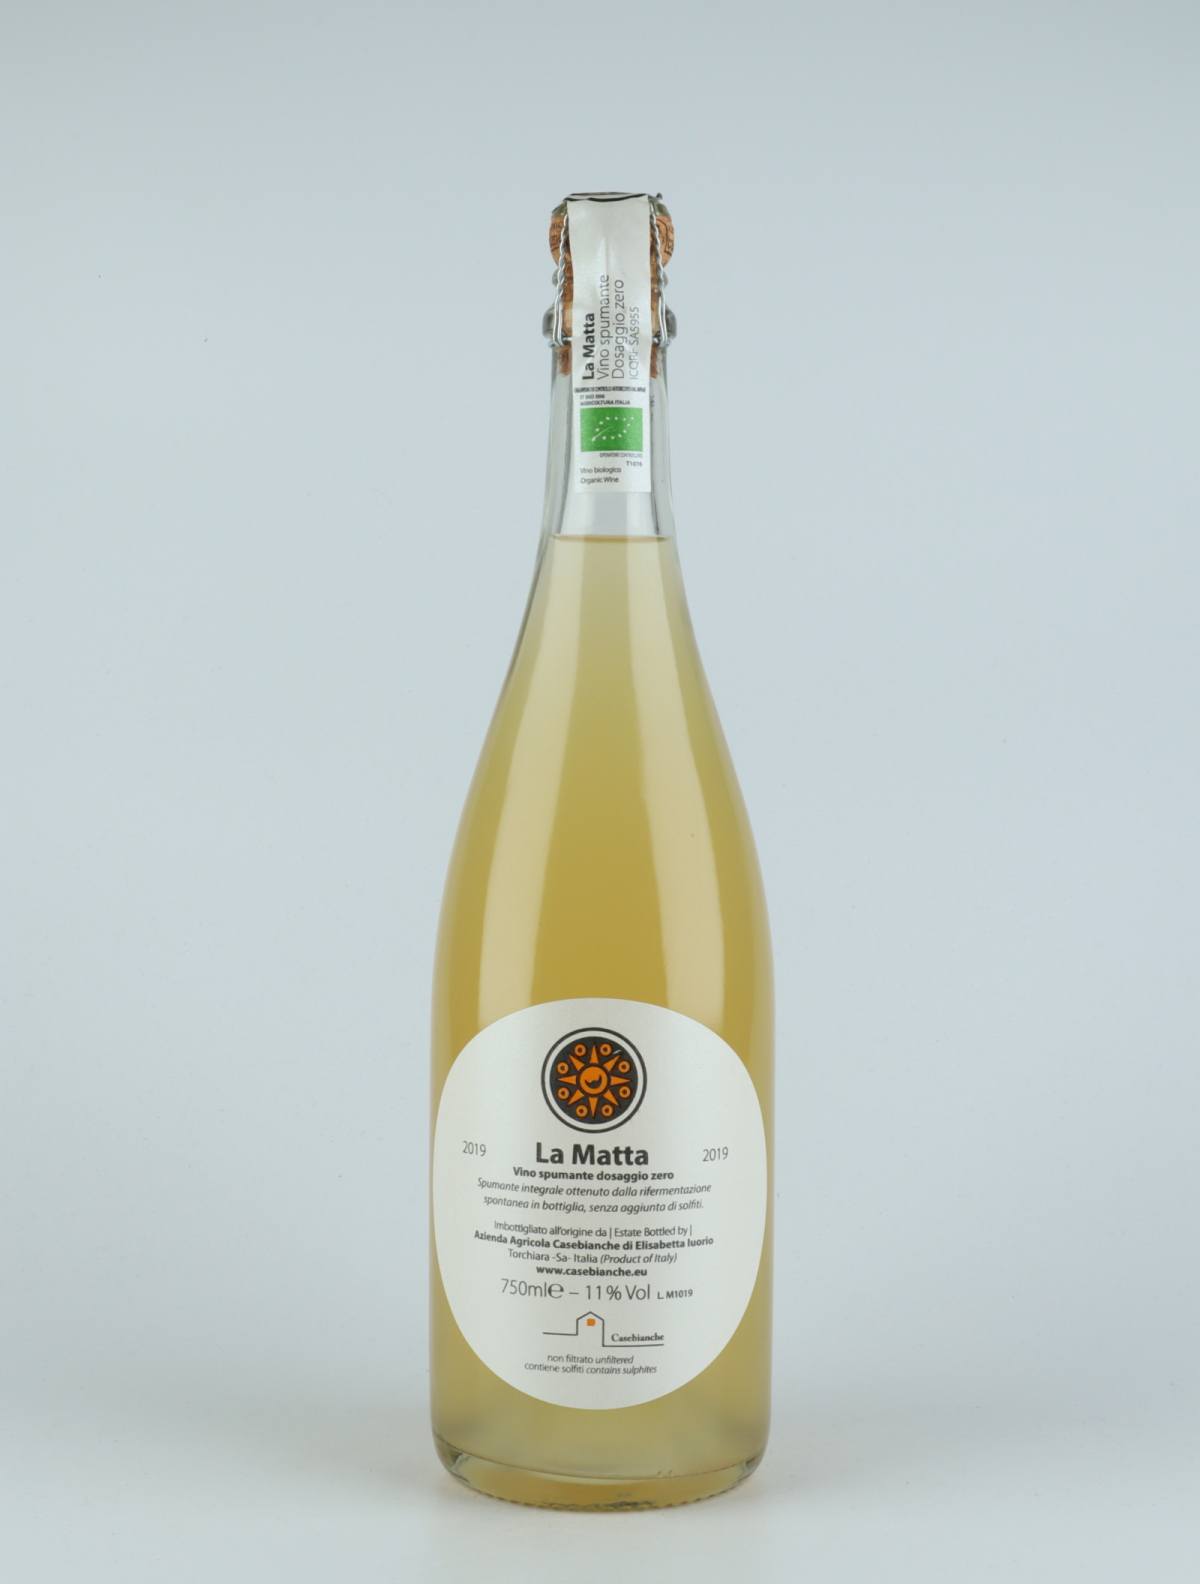 A bottle 2020 La Matta Sparkling from Casebianche, Campania in Italy